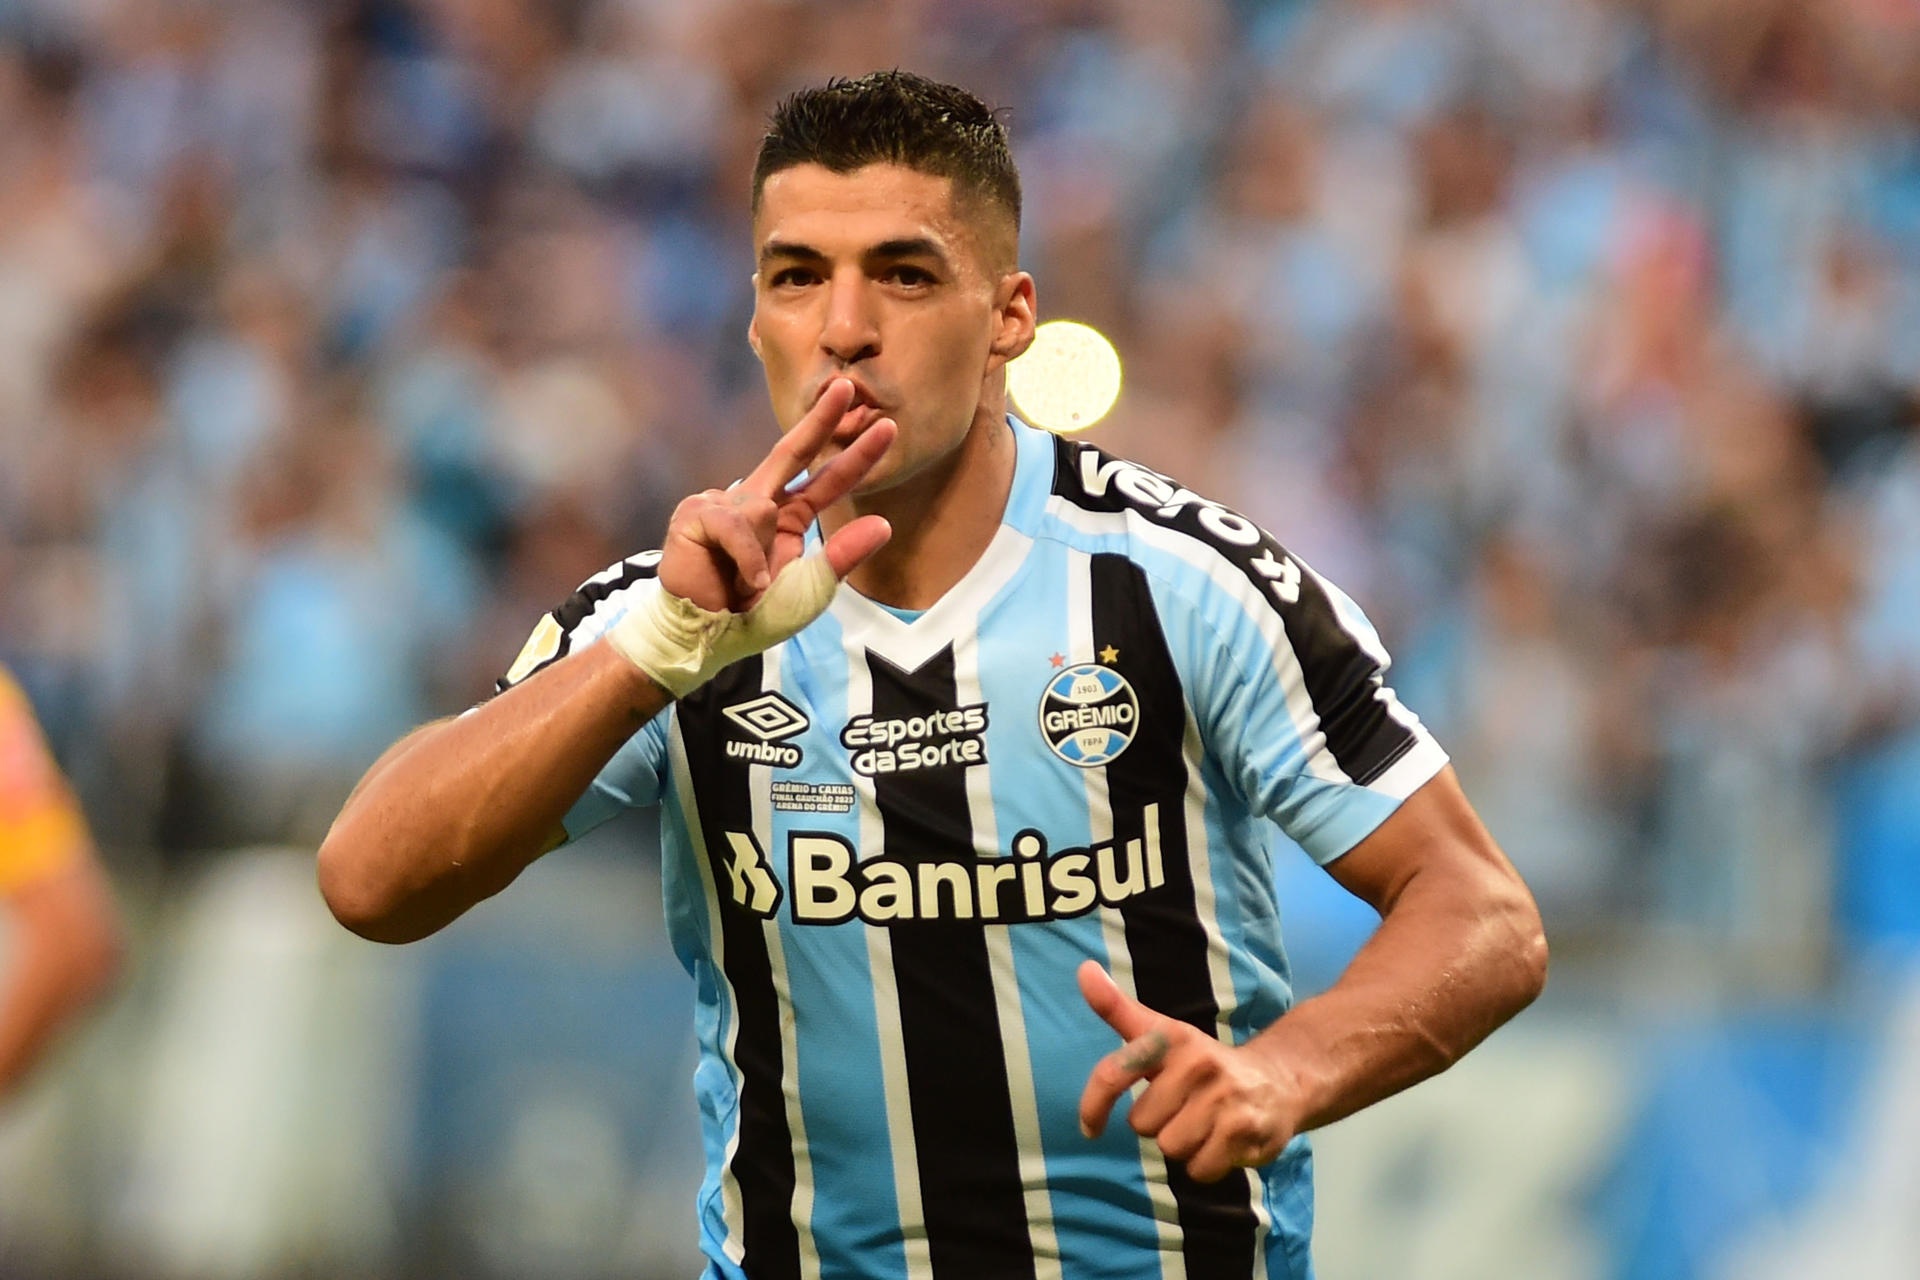 É uma possibilidade“, diz Suárez sobre jogar no Inter Miami